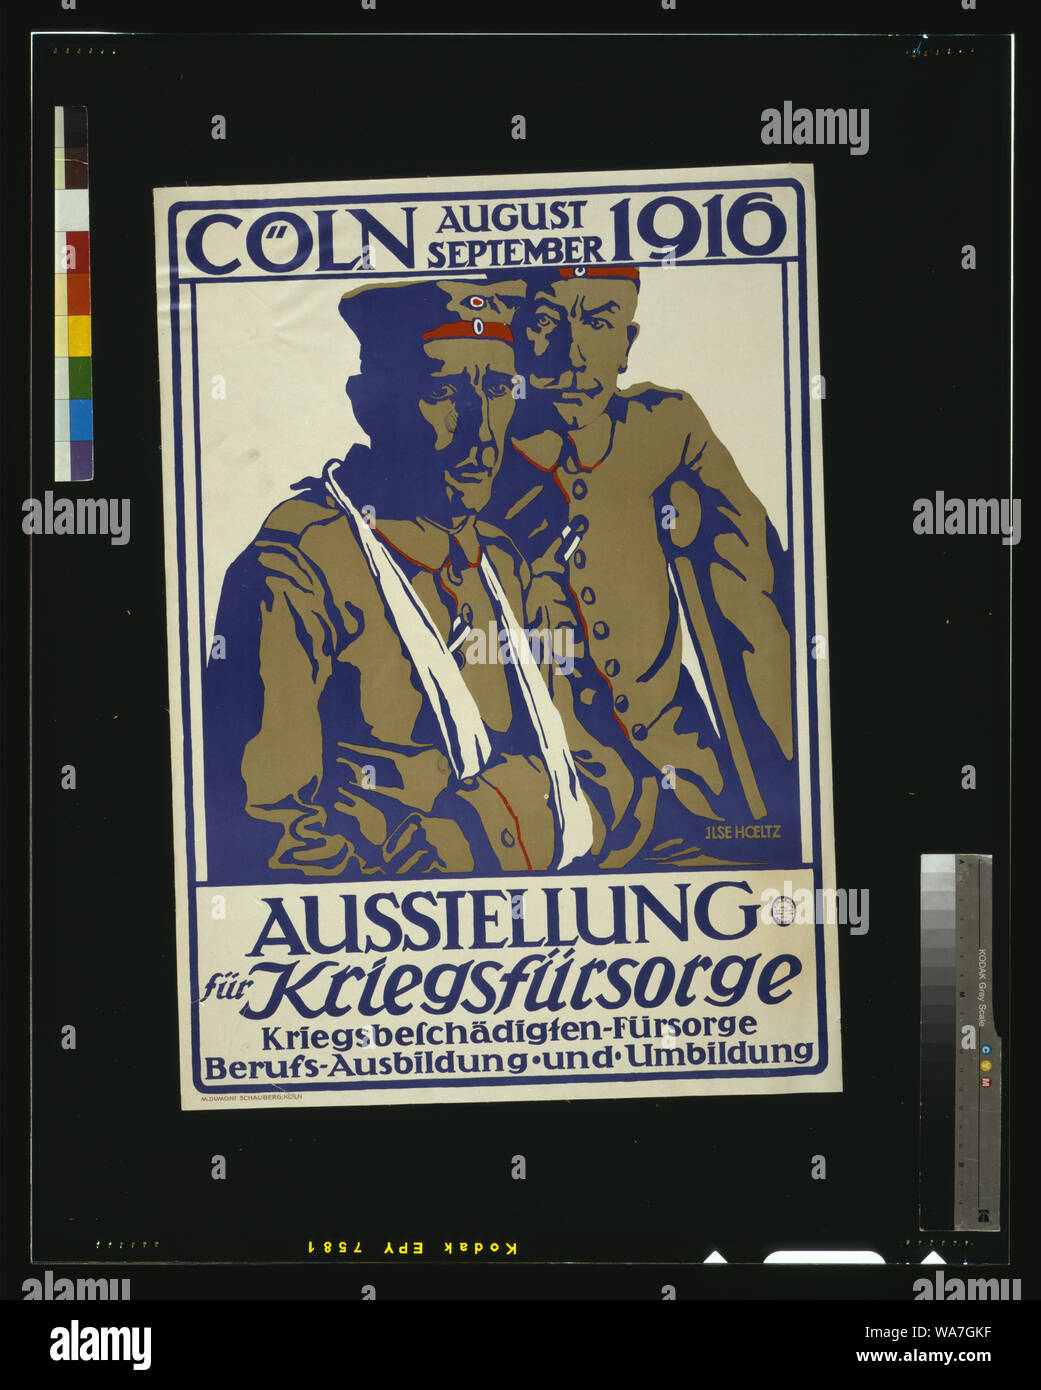 Ausstellung für Kriegsfürsorge, Cöln, agosto-settembre 1916; Kriegsbeschädigten-fürsorge, Berufs-Ausbildung und Umbildung / Ilse Hoeltz. Foto Stock